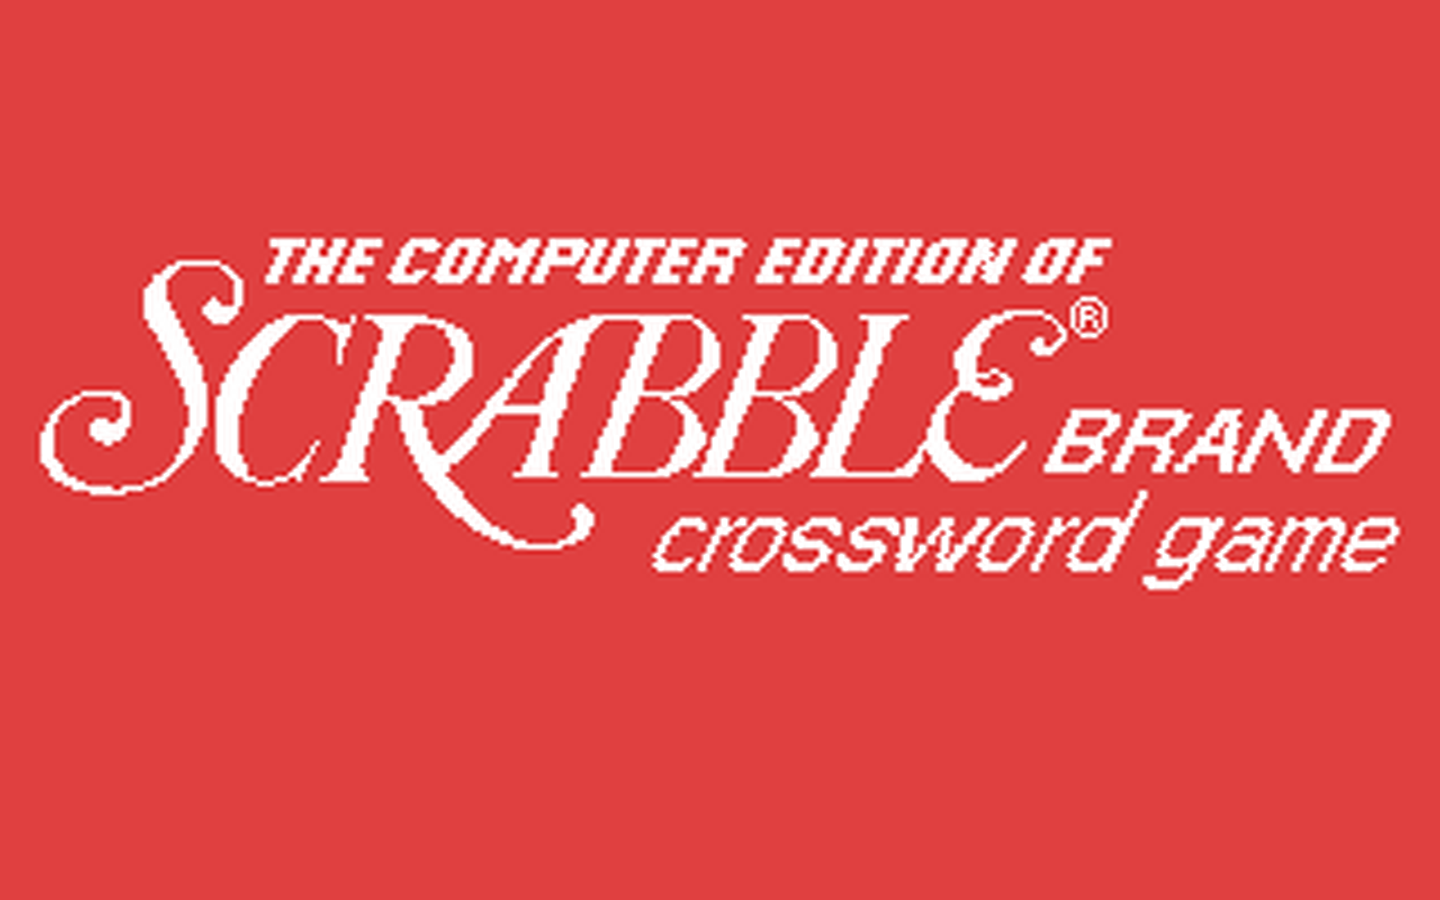 C64 GameBase Computer_Scrabble_De_Luxe Leisure_Genius 1986